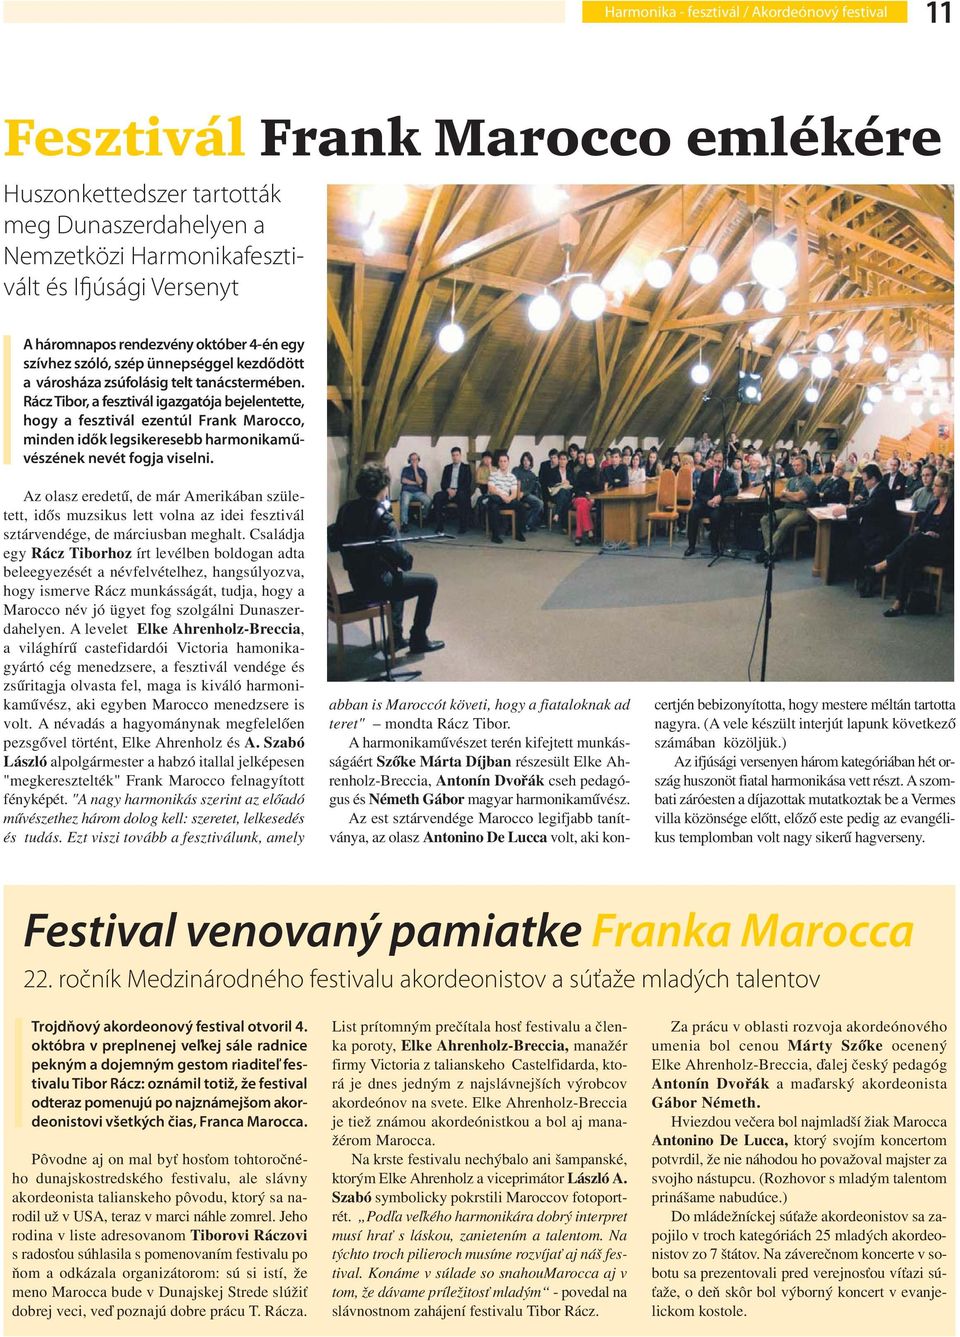 Rácz Tibor, a fesztivál igazgatója bejelentette, hogy a fesztivál ezentúl Frank Marocco, minden idők legsikeresebb harmonikaművészének nevét fogja viselni.